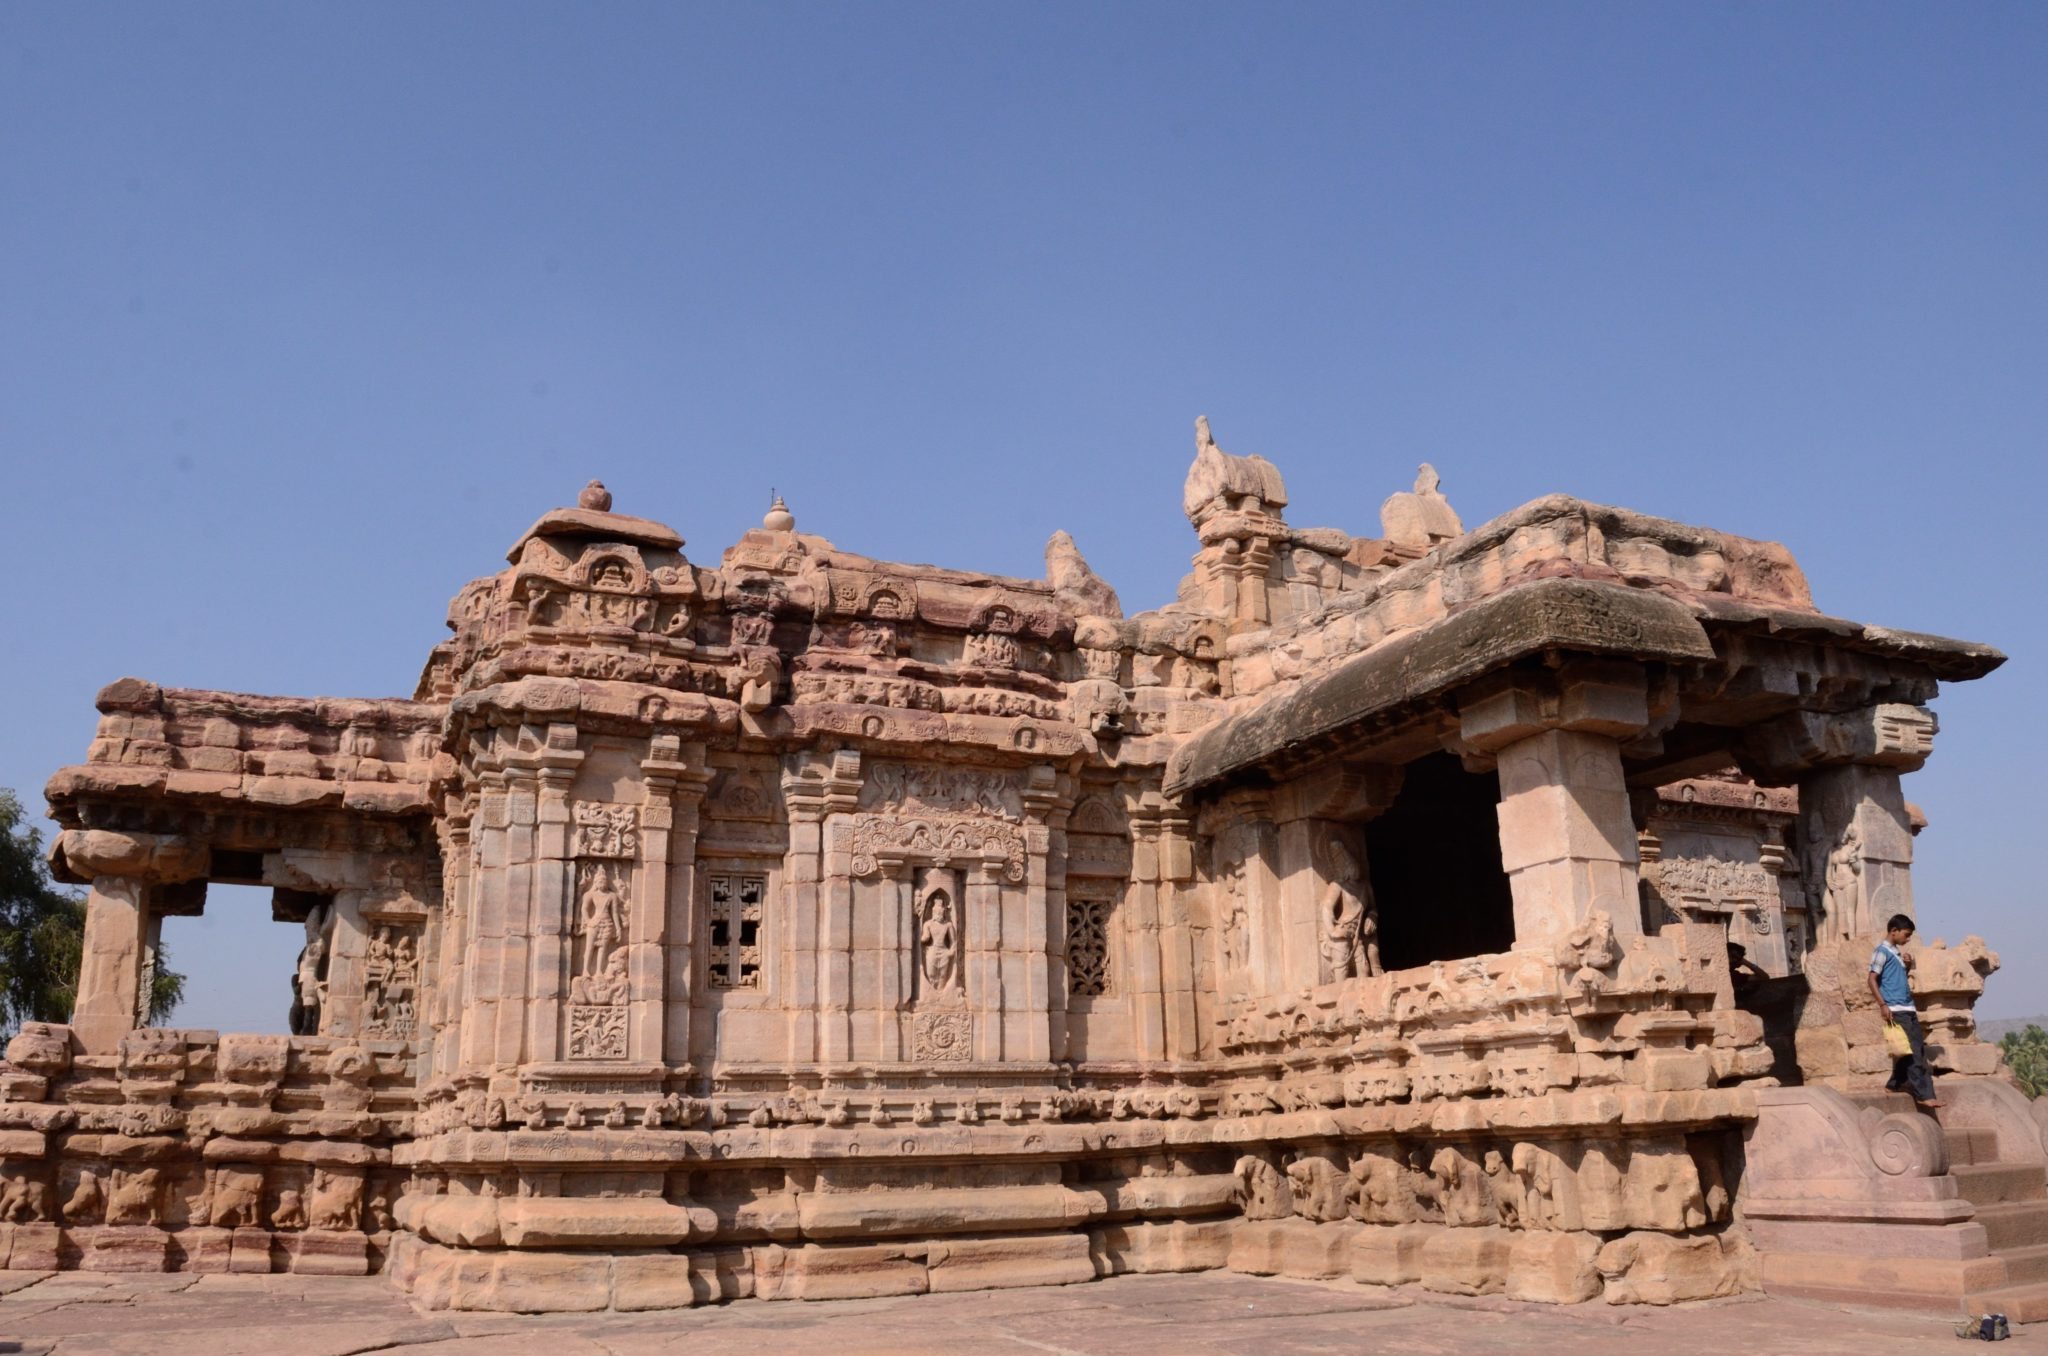 Pattadakal Virupaksha temple - Built by a queen